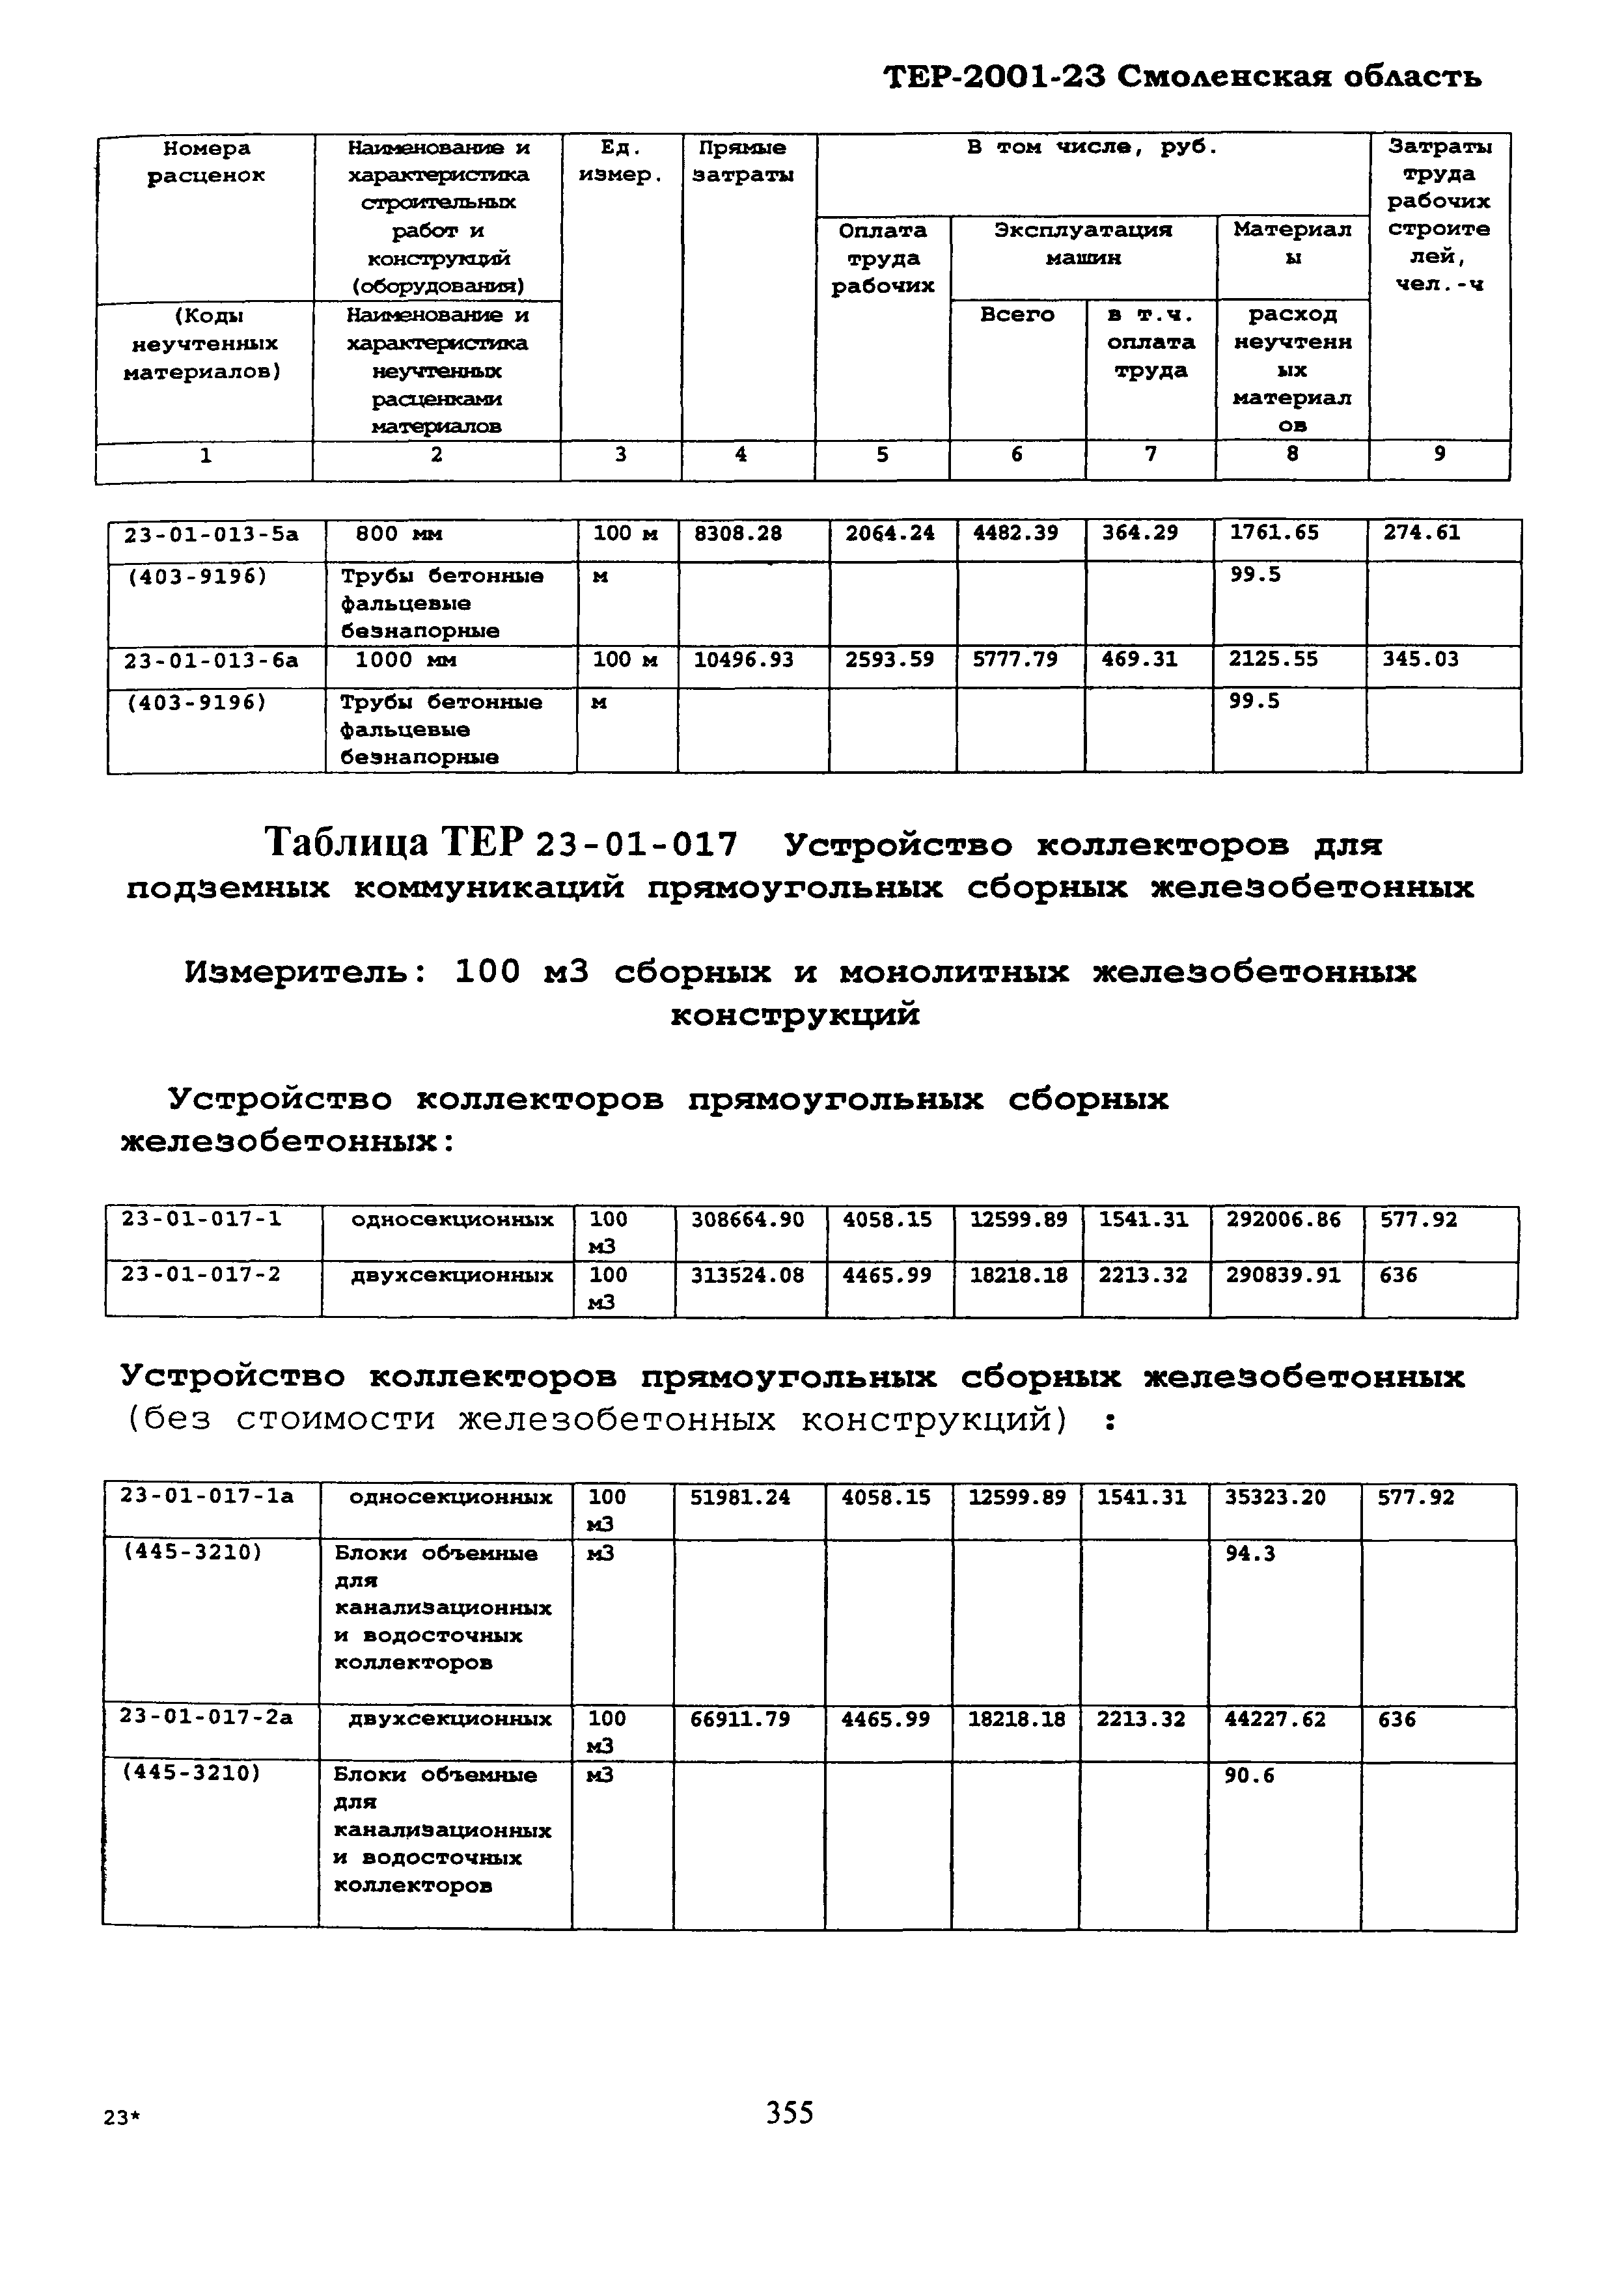 ТЕР Смоленская область 2001-23